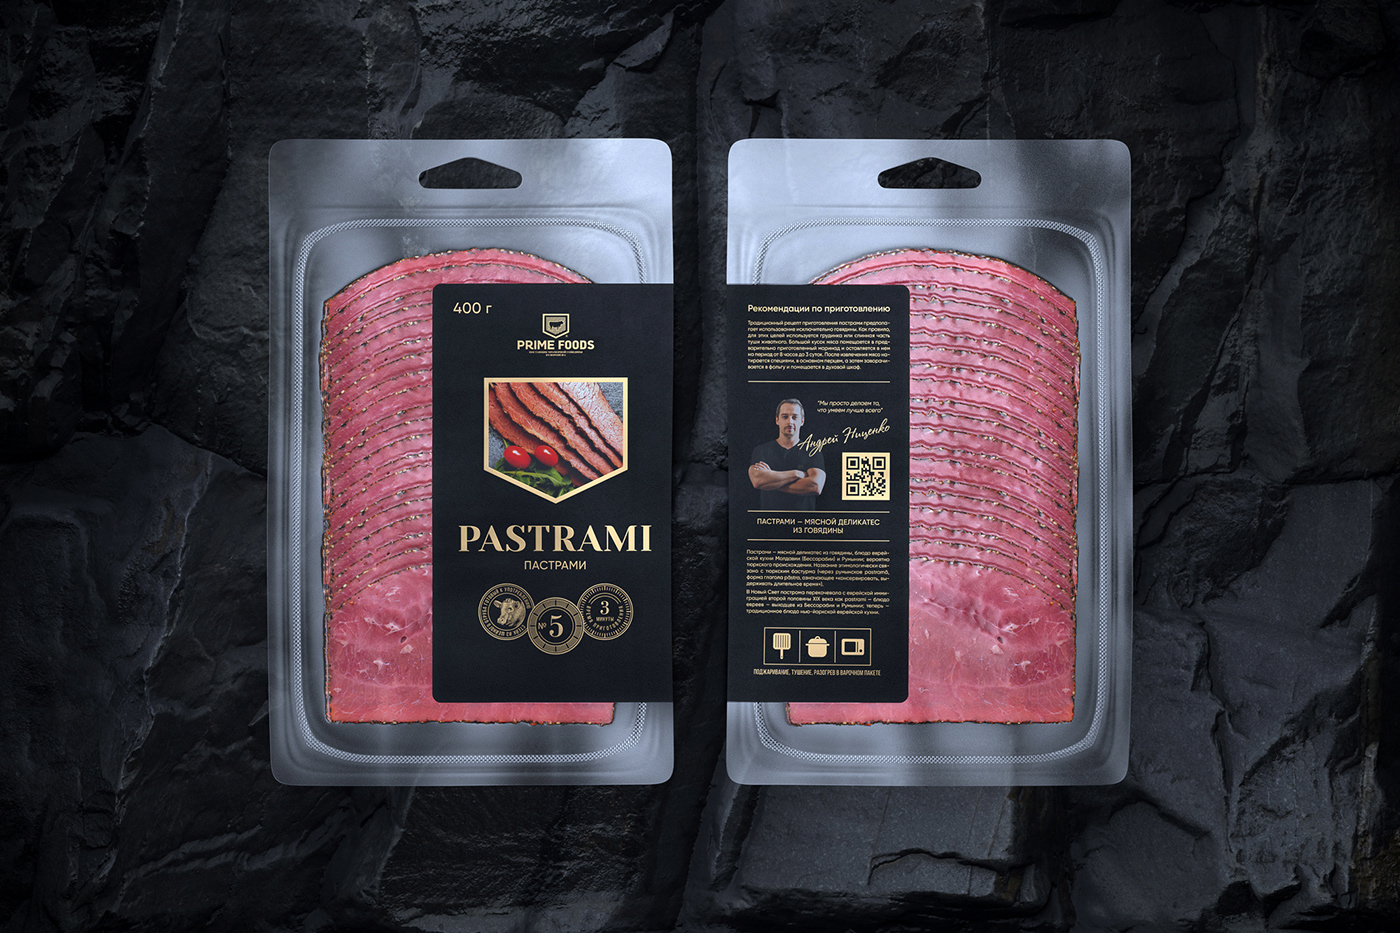 beef meat Premium Design premium package Prime Beef prime foods steak meat packaging Food Packaging sausages